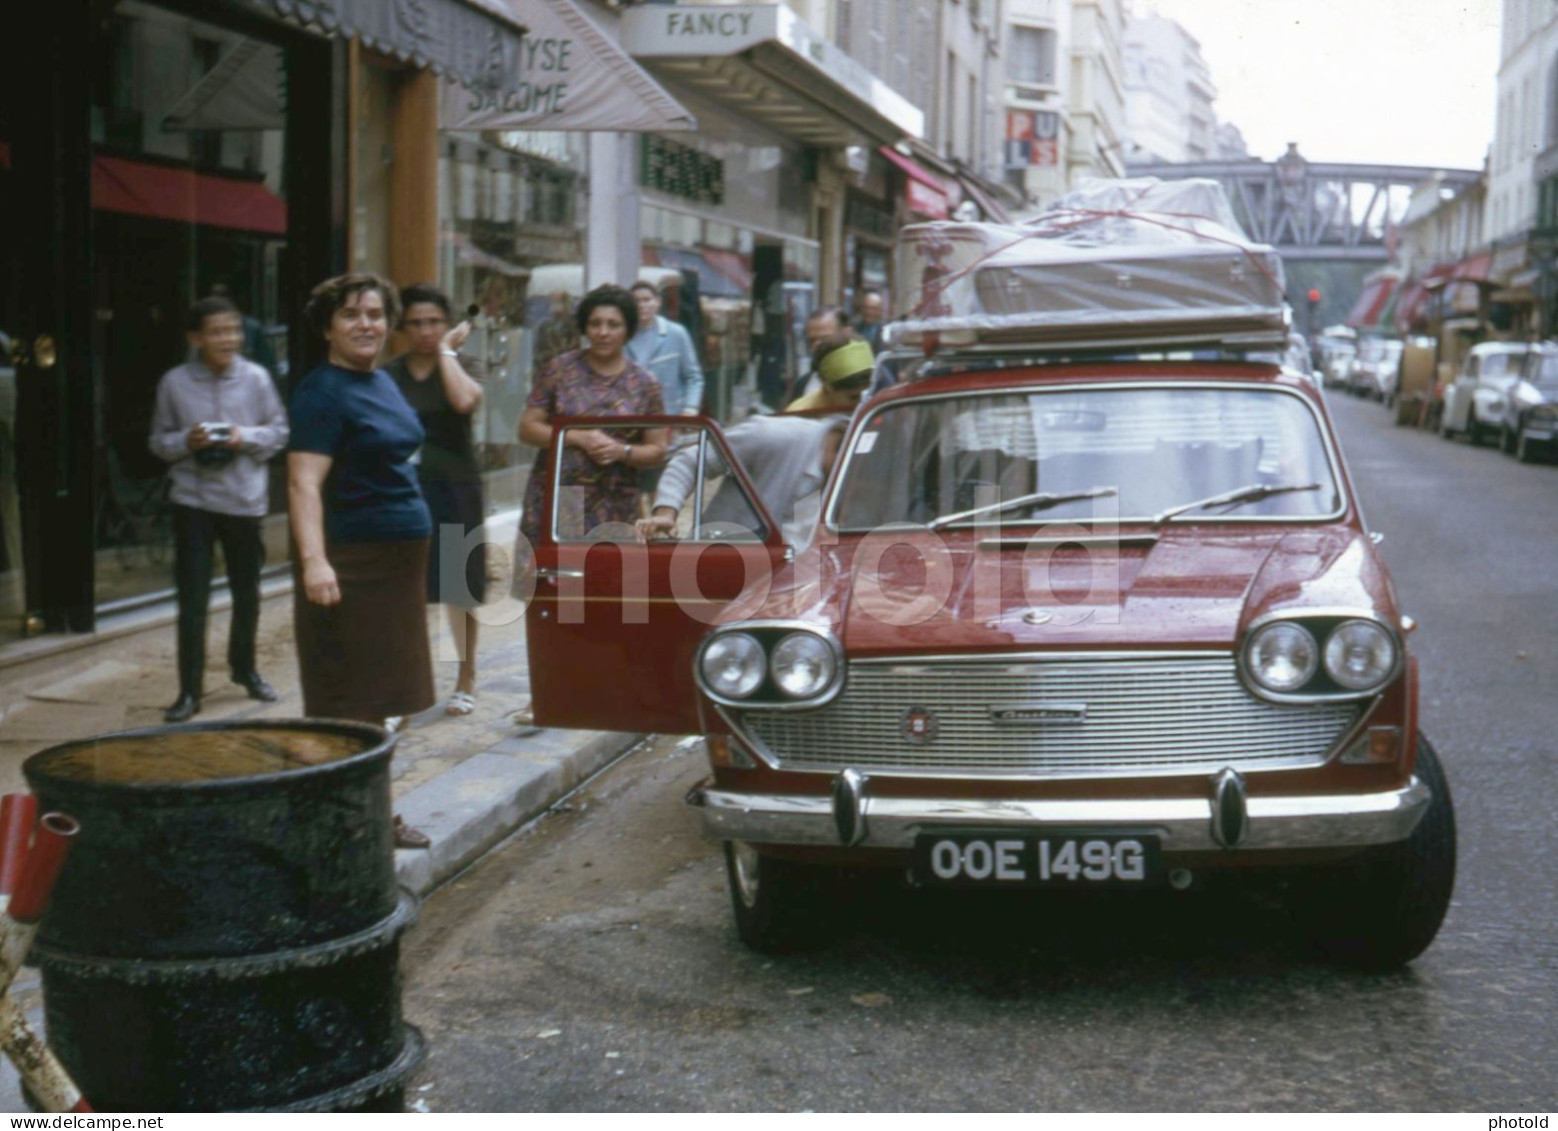 1969 UK PLATE AUSTIN 3 LITRE CAR RUE DU COMMERCE PARIS FRANCE 35mm AMATEUR DIAPOSITIVE SLIDE Not PHOTO No FOTO NB4129 - Diapositivas